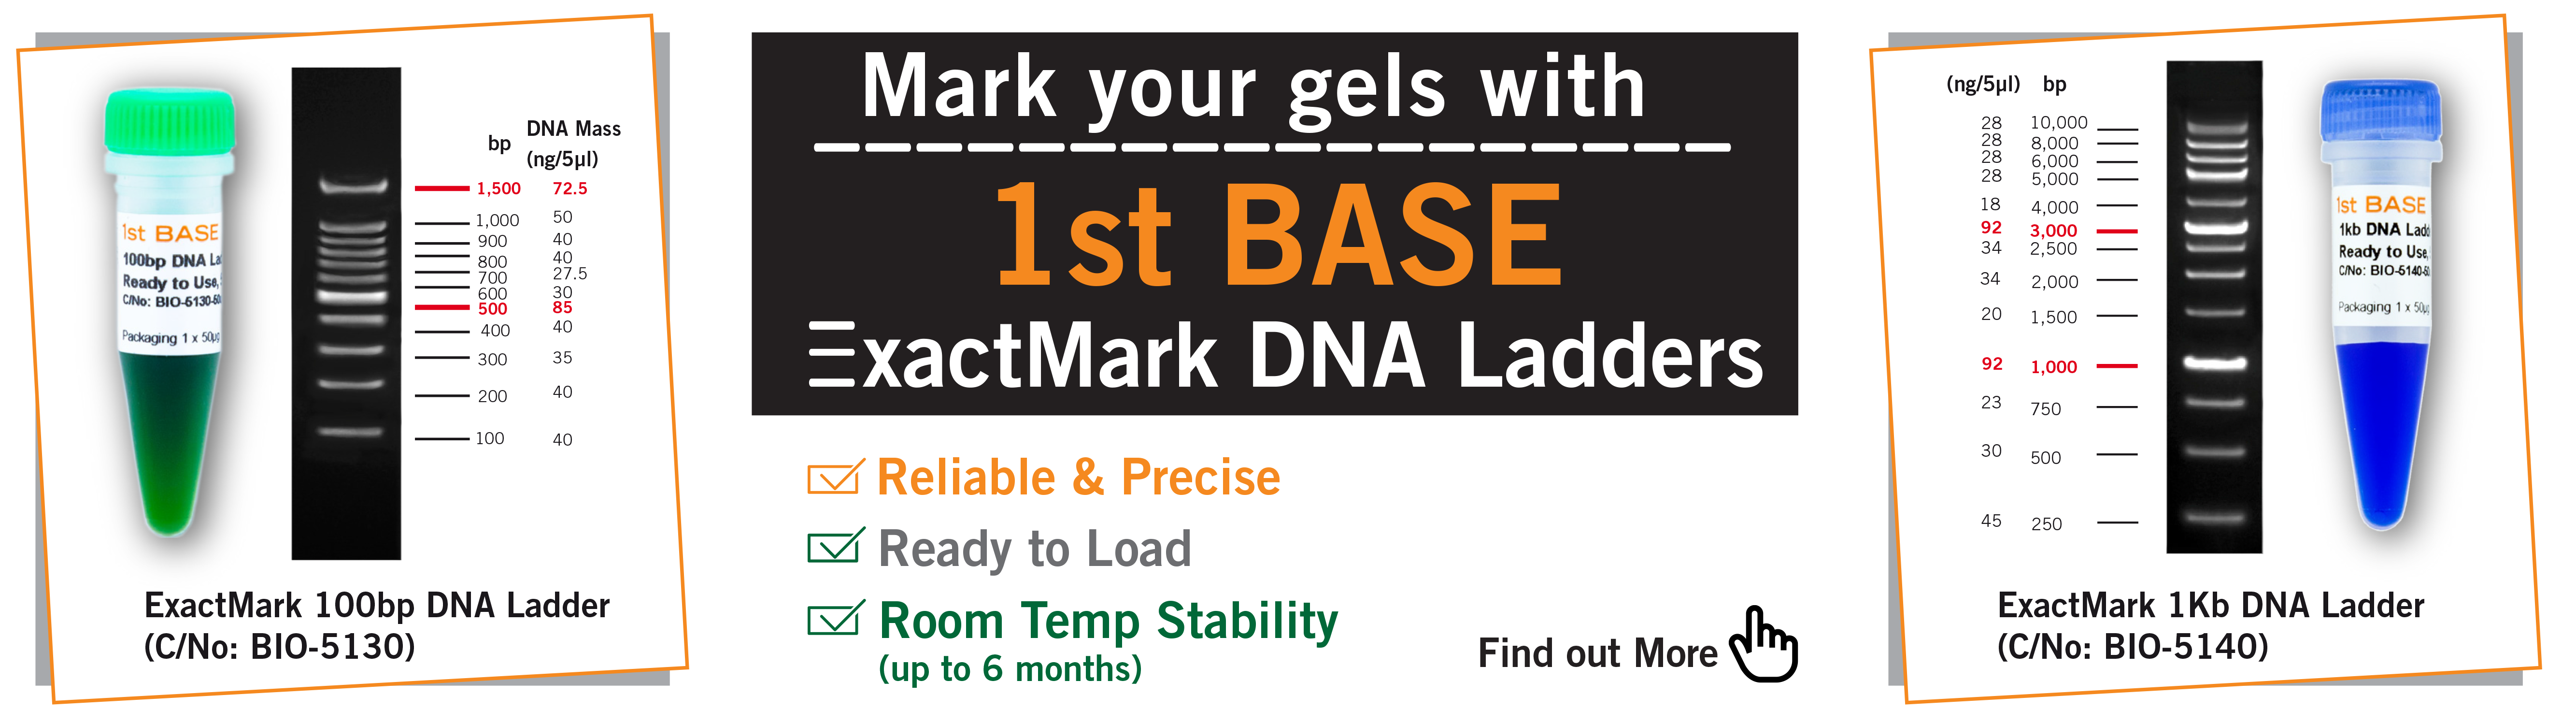 //base-asia.com/wp-content/uploads/2021/10/Exactmark-DNA-Ladder-banner-ed3a.png